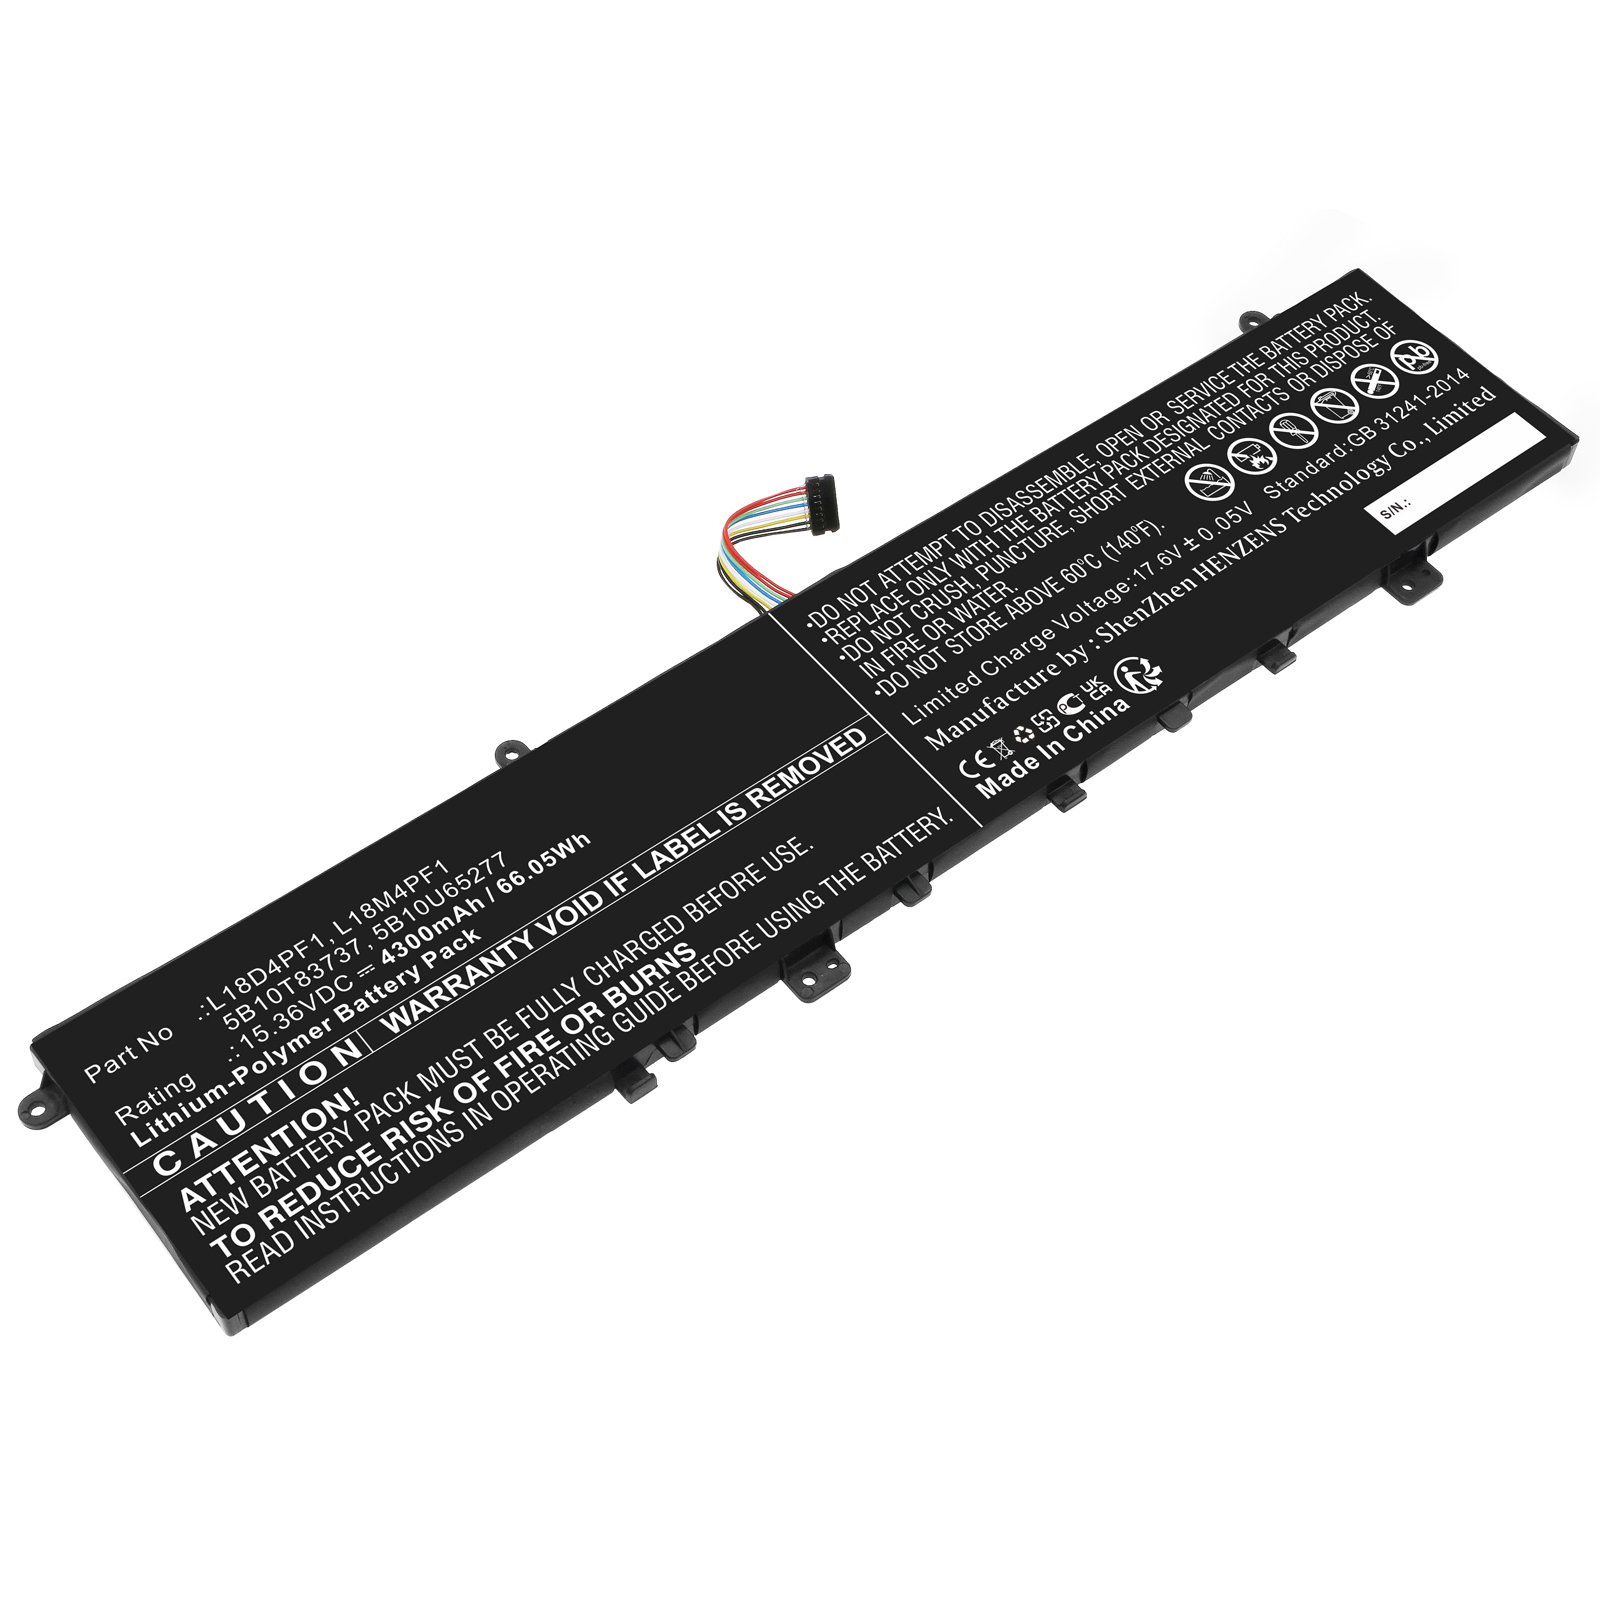 Synergy Digital Laptop Battery, Compatible with Lenovo L18D4PF1 Laptop Battery (Li-Pol, 15.36V, 4300mAh)